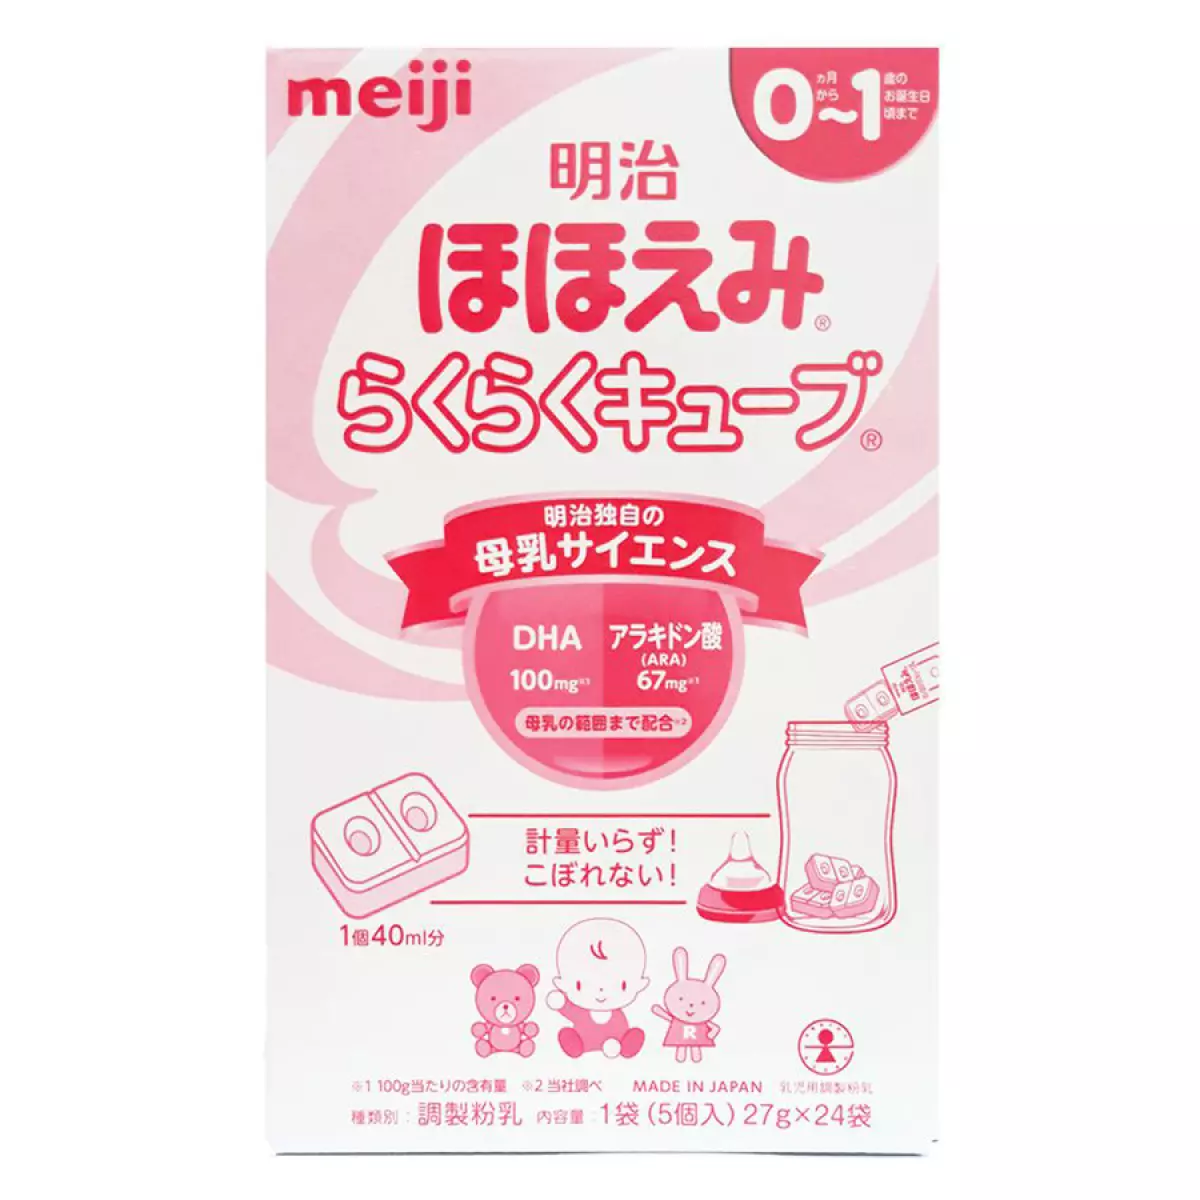 Sữa Meiji dạng thanh số 0 nội địa Nhật Bản